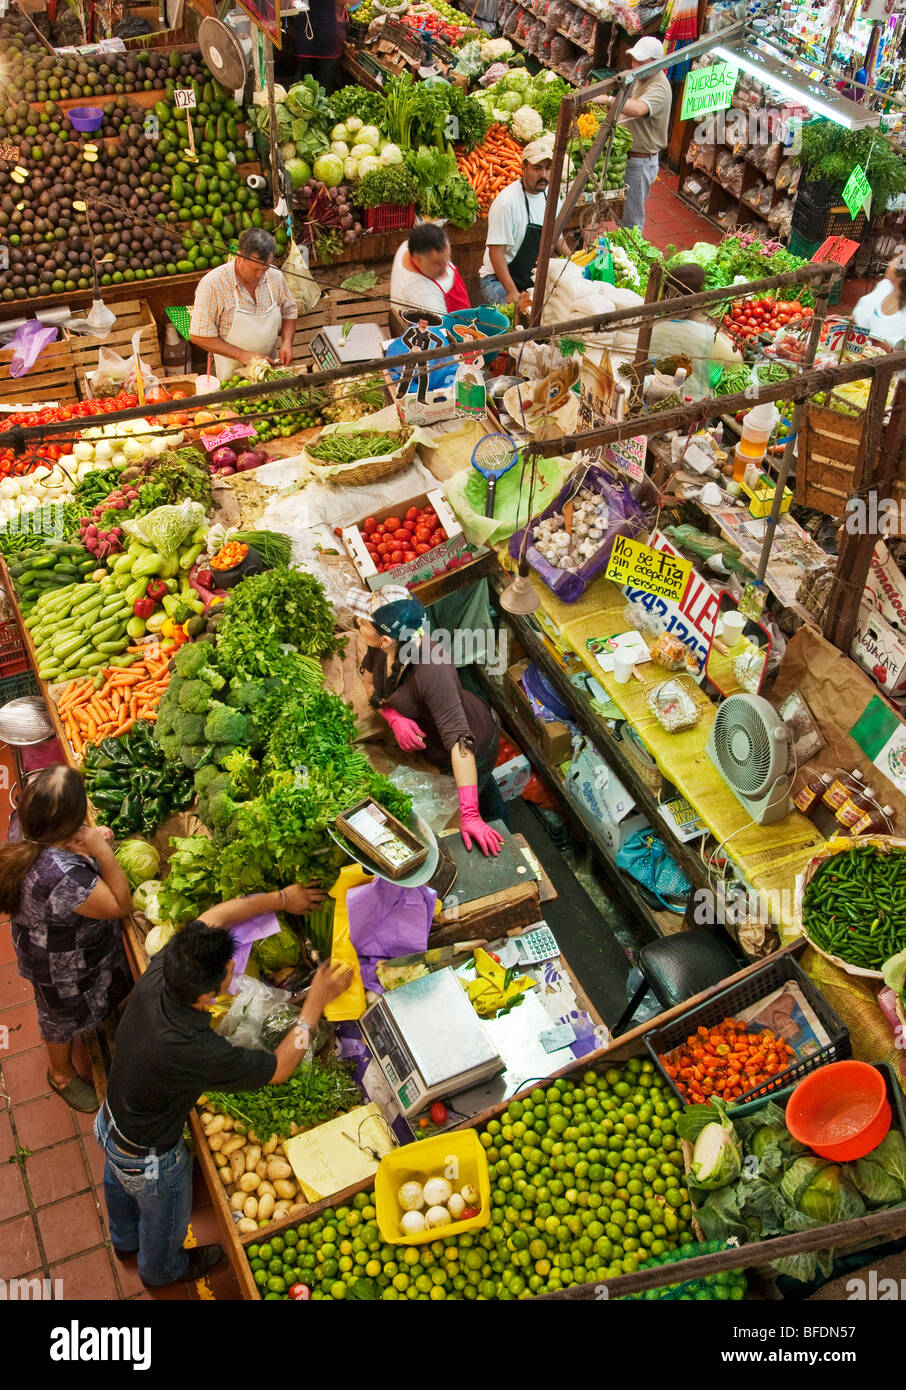 Produce stand at Mercado Libertad, Guadalajara, Mexico. Stock Photo